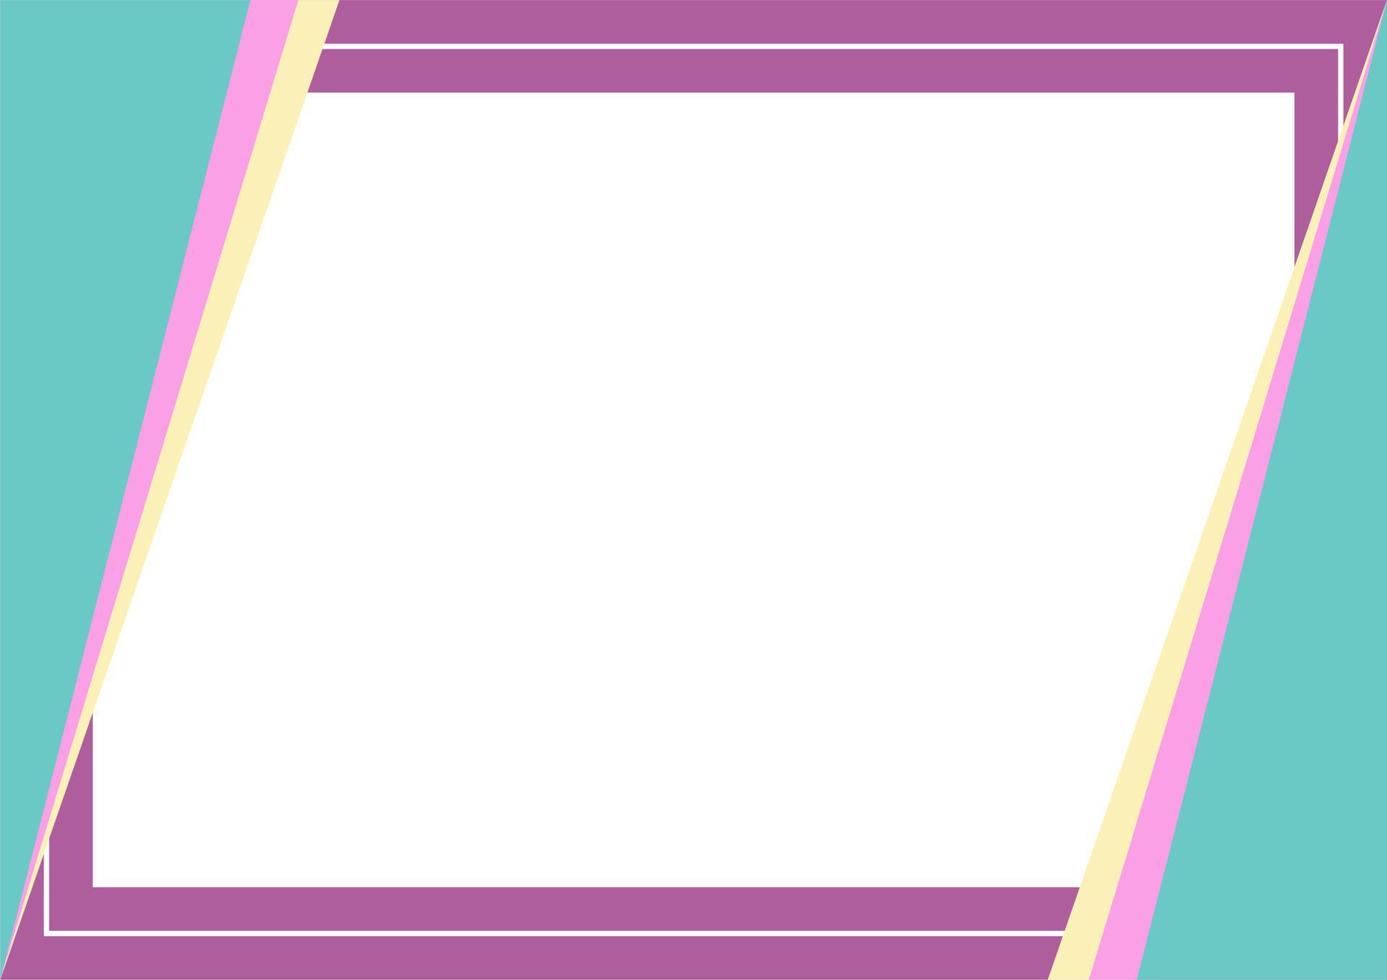 violette, rosa, grüne, gelbe Hintergrundfarbe mit Streifenlinienform. geeignet für Social-Media-Post- und Web-Internet-Anzeigen. Vorlagenlayout. Rahmen, Grenze für Text, Bild, Werbung. Freiraum vektor